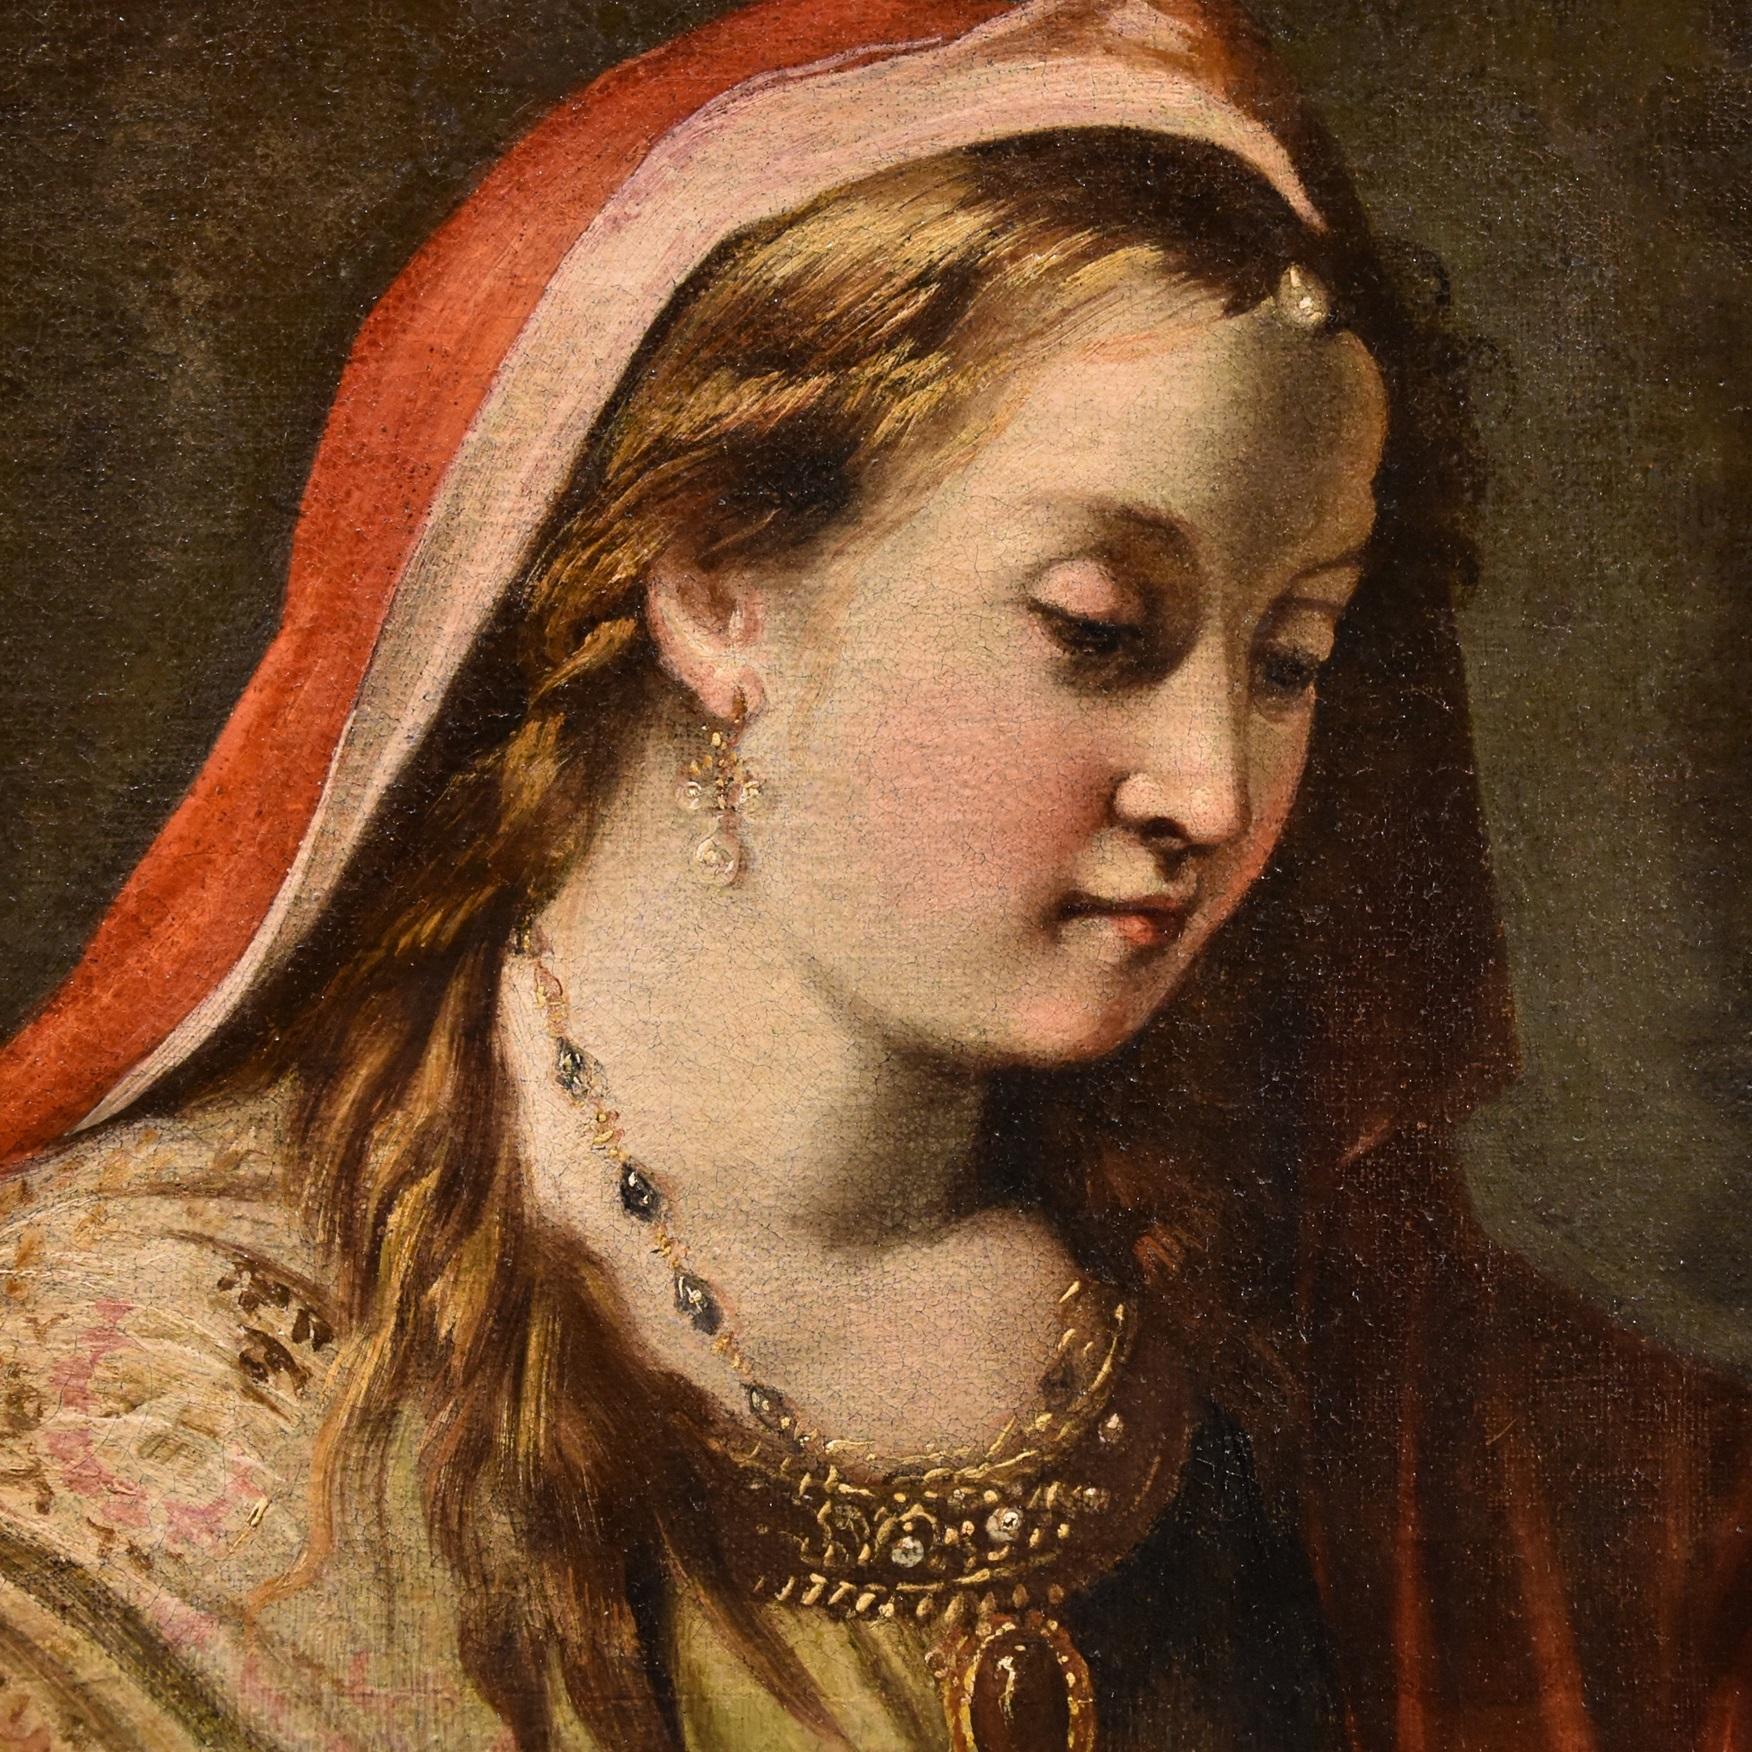 Porträt Frau Prinzessin Diziani, Gemälde, Öl auf Leinwand, 18. Jahrhundert, Altmeister, Kunst (Alte Meister), Painting, von Gaspare Diziani (belluno 1689 - Venice 1767)